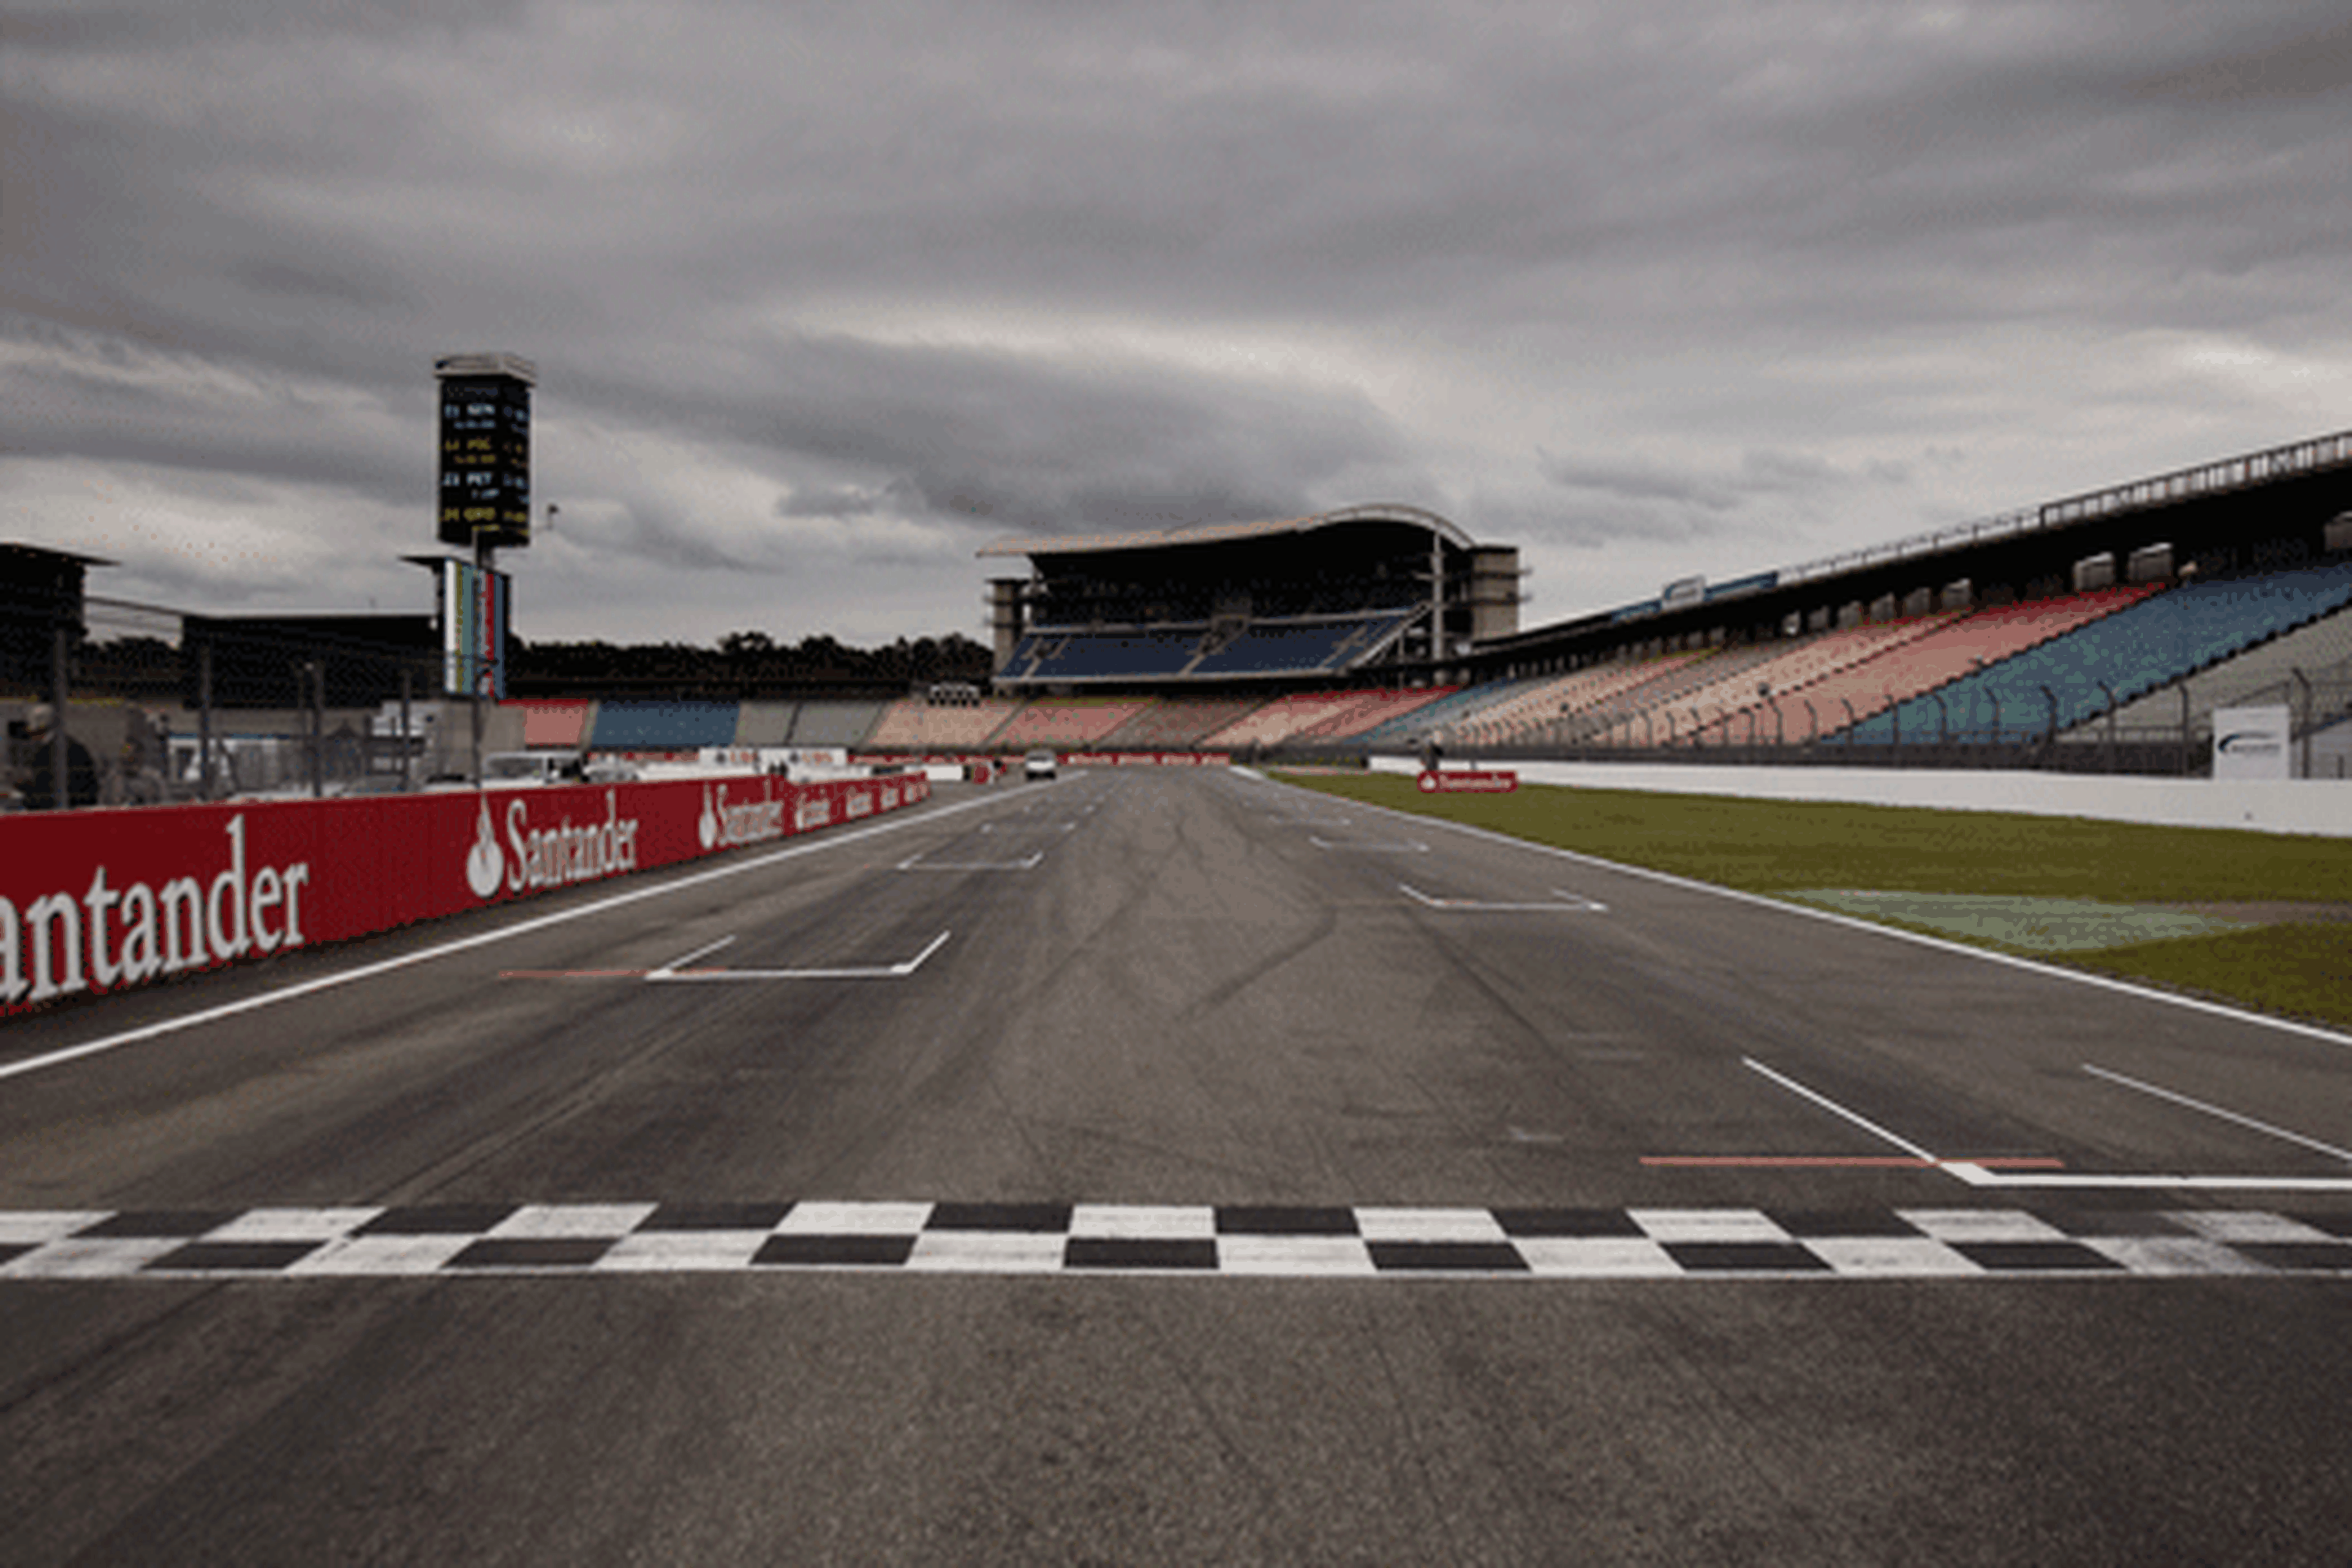 La FIA confirma el calendario 2013 con 19 carreras